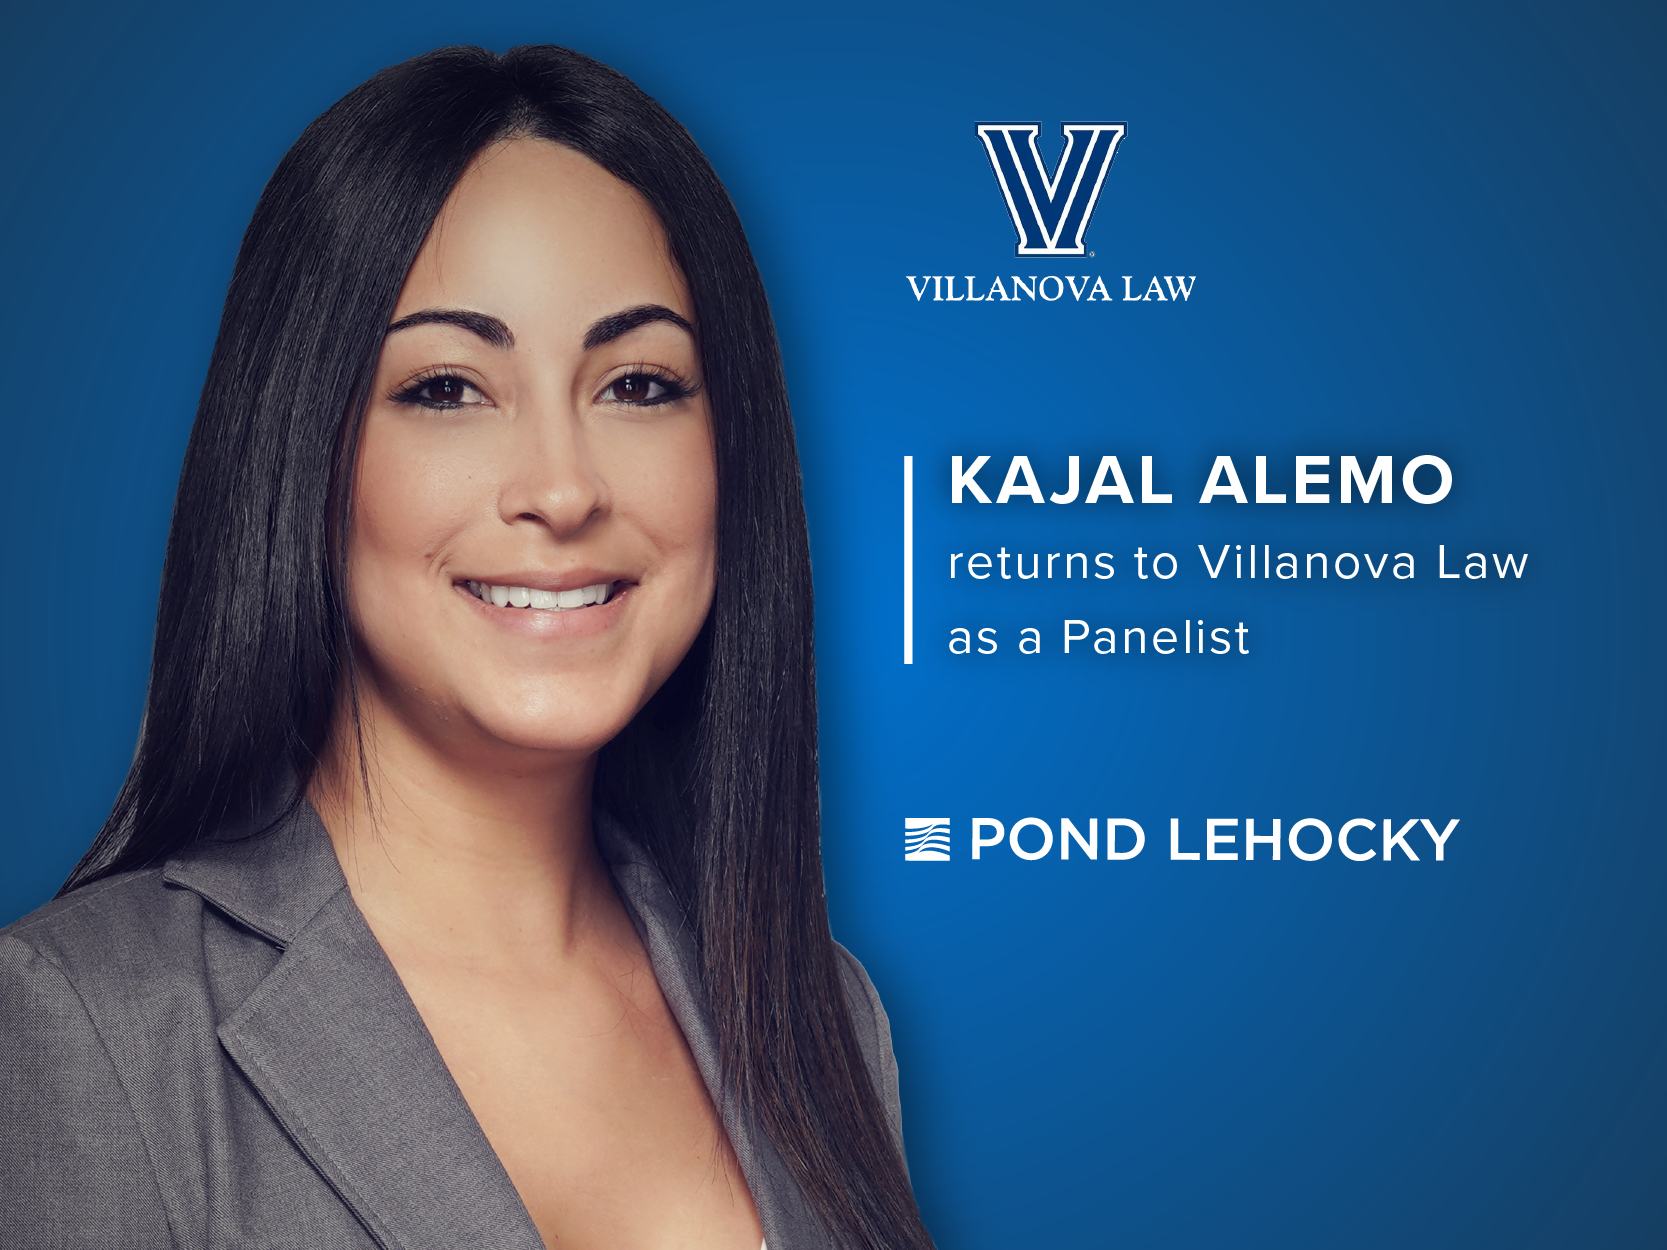 Pond Lehocky Giordano Attorney Kajal Alemo returns to Villanova as Panelist